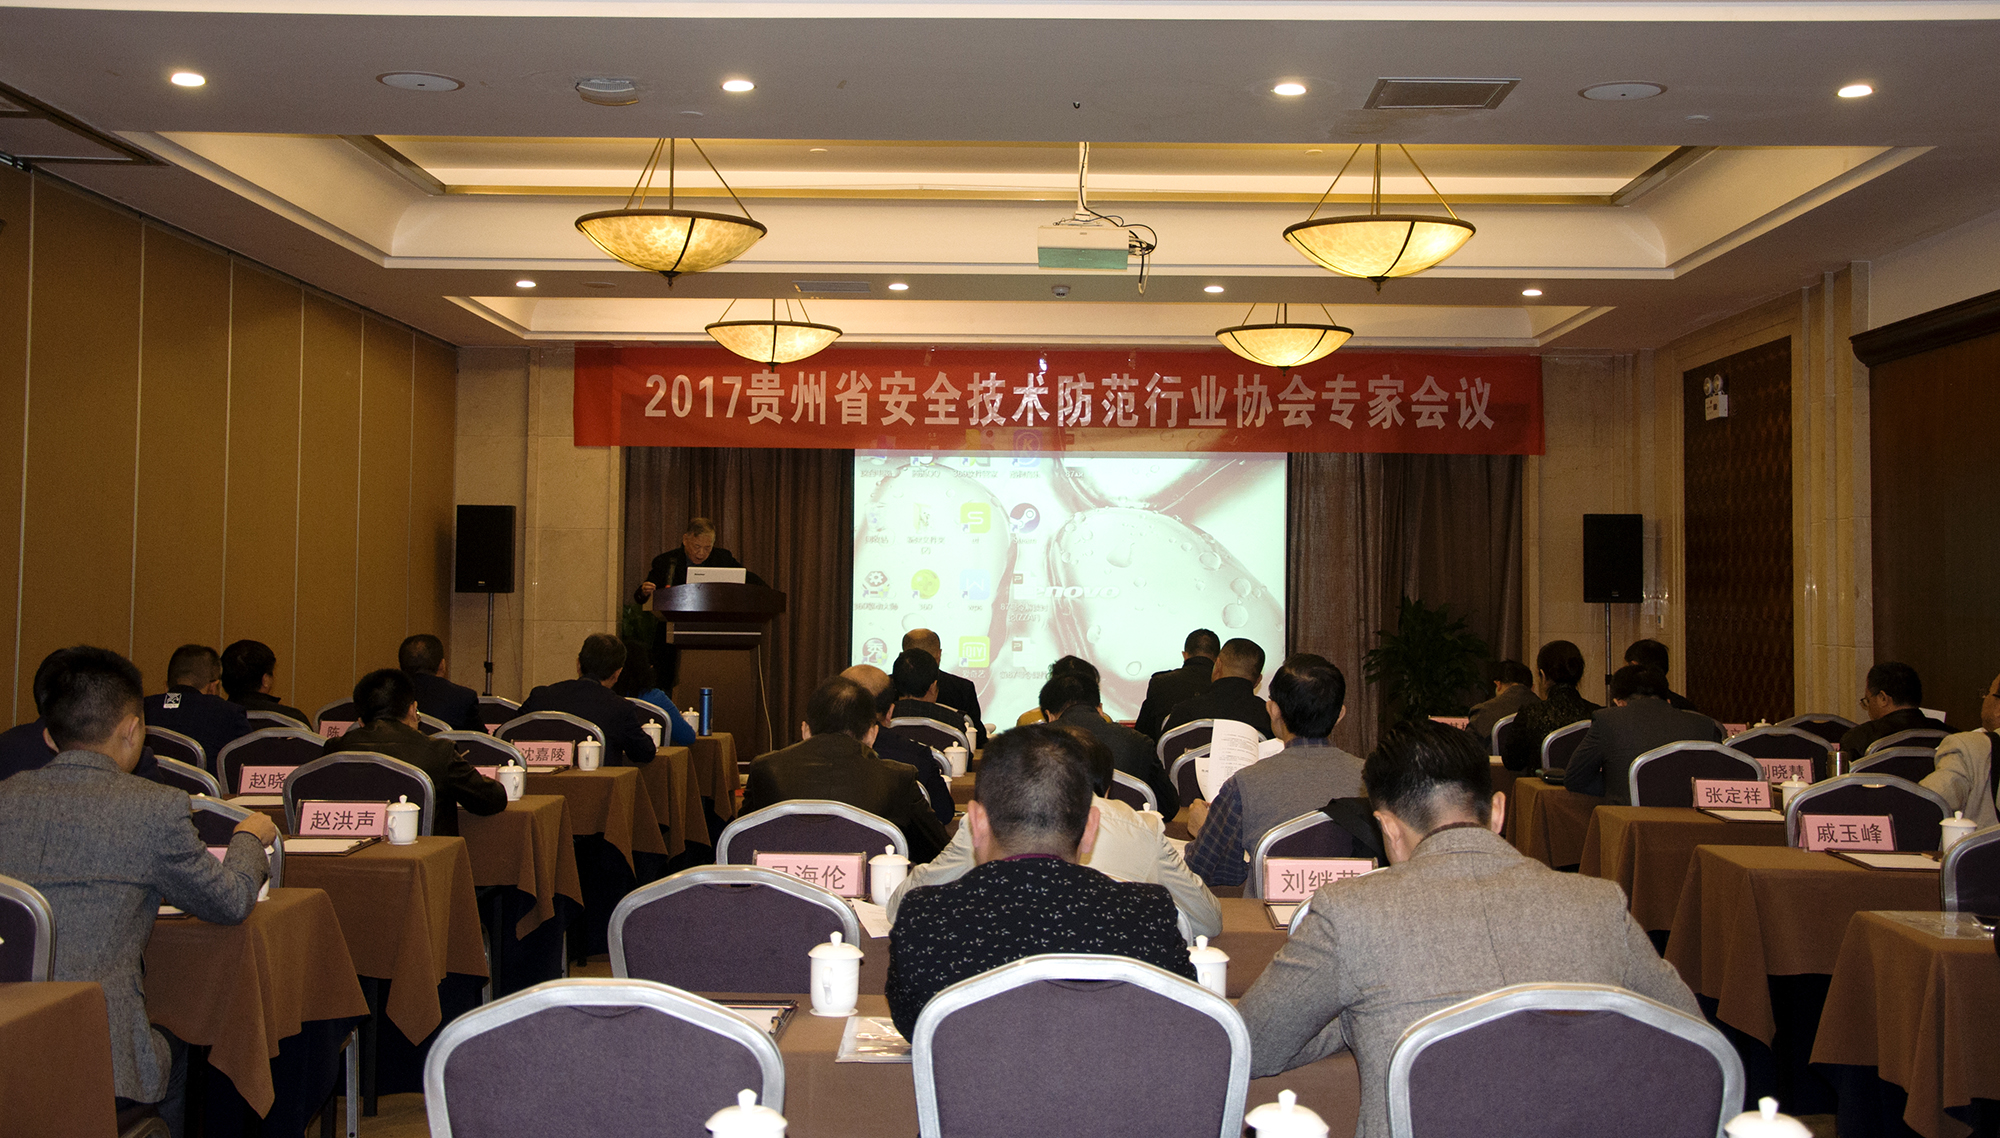 2017年贵州省安防协会专家会议成功召开